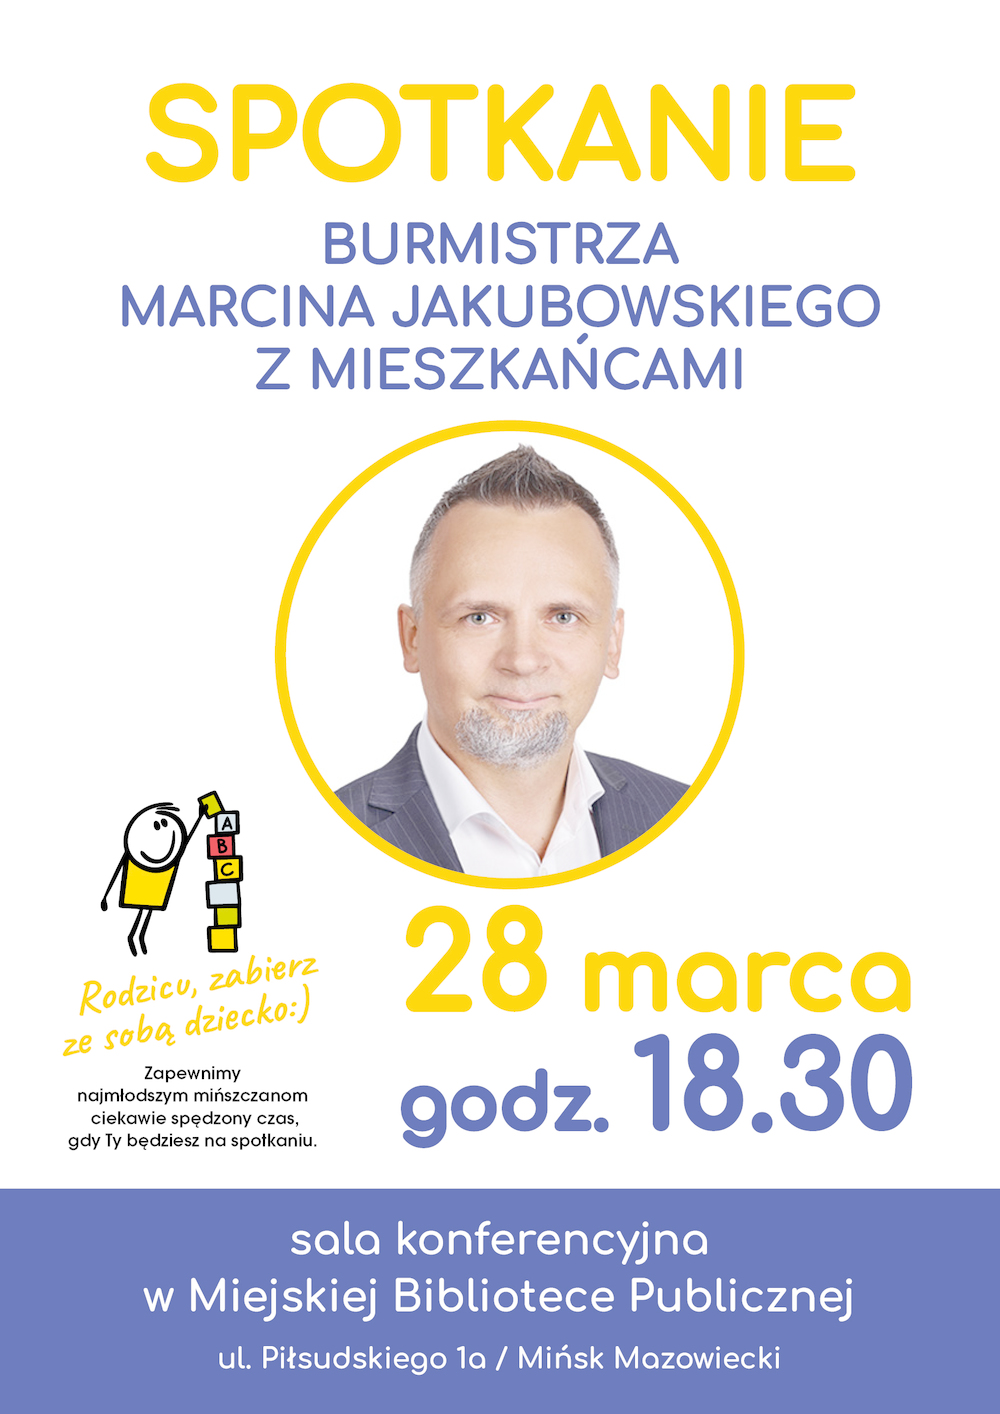 Spotkanie z burmistrzem Marcinem Jakubowskim